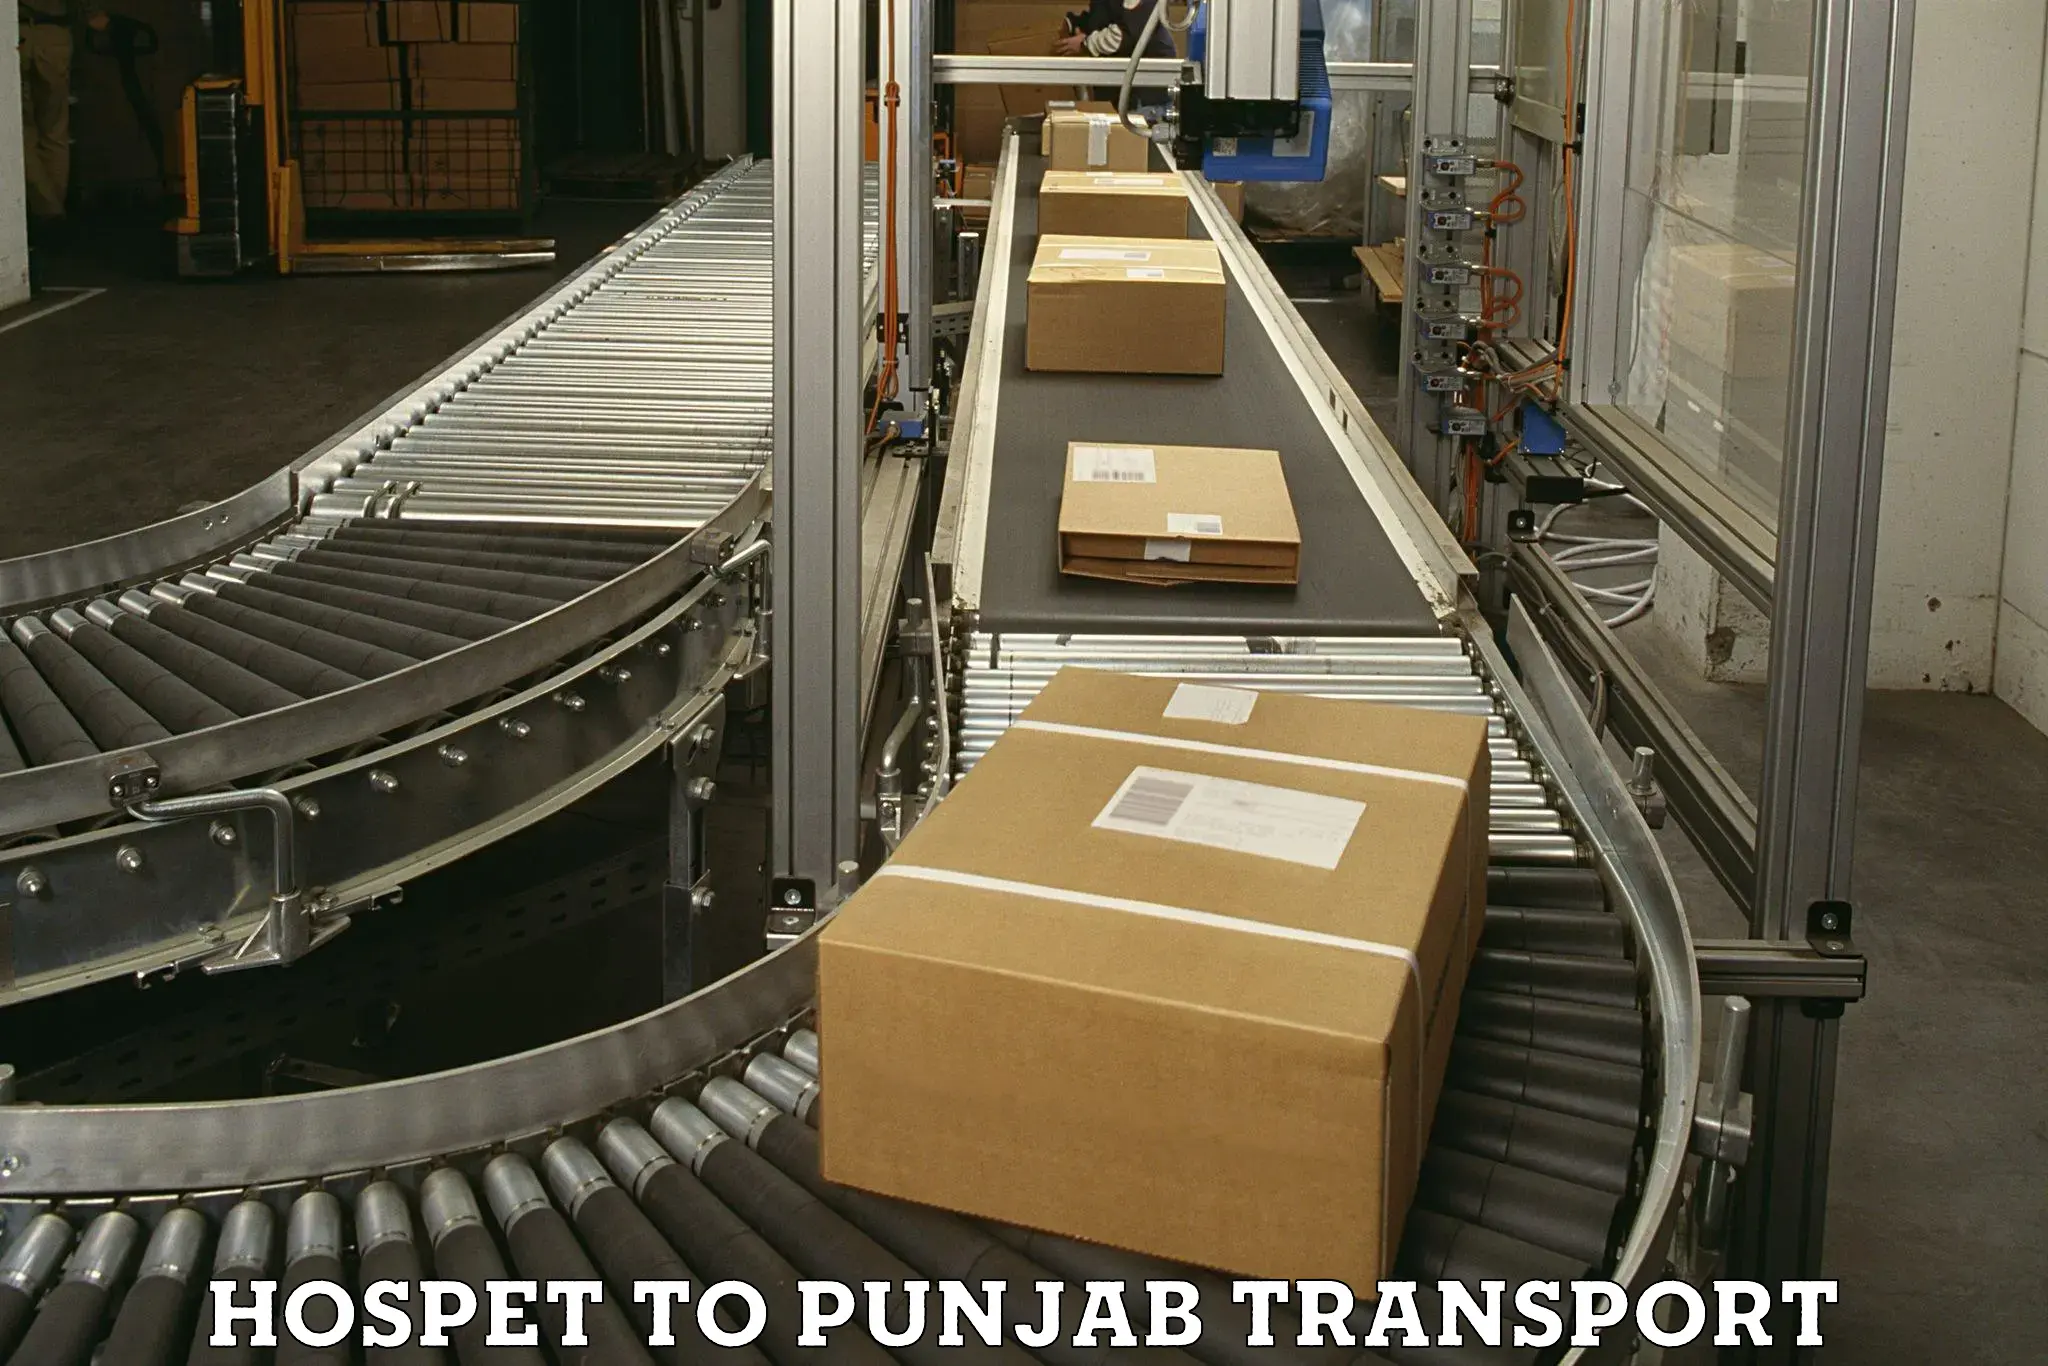 Online transport service Hospet to Punjab